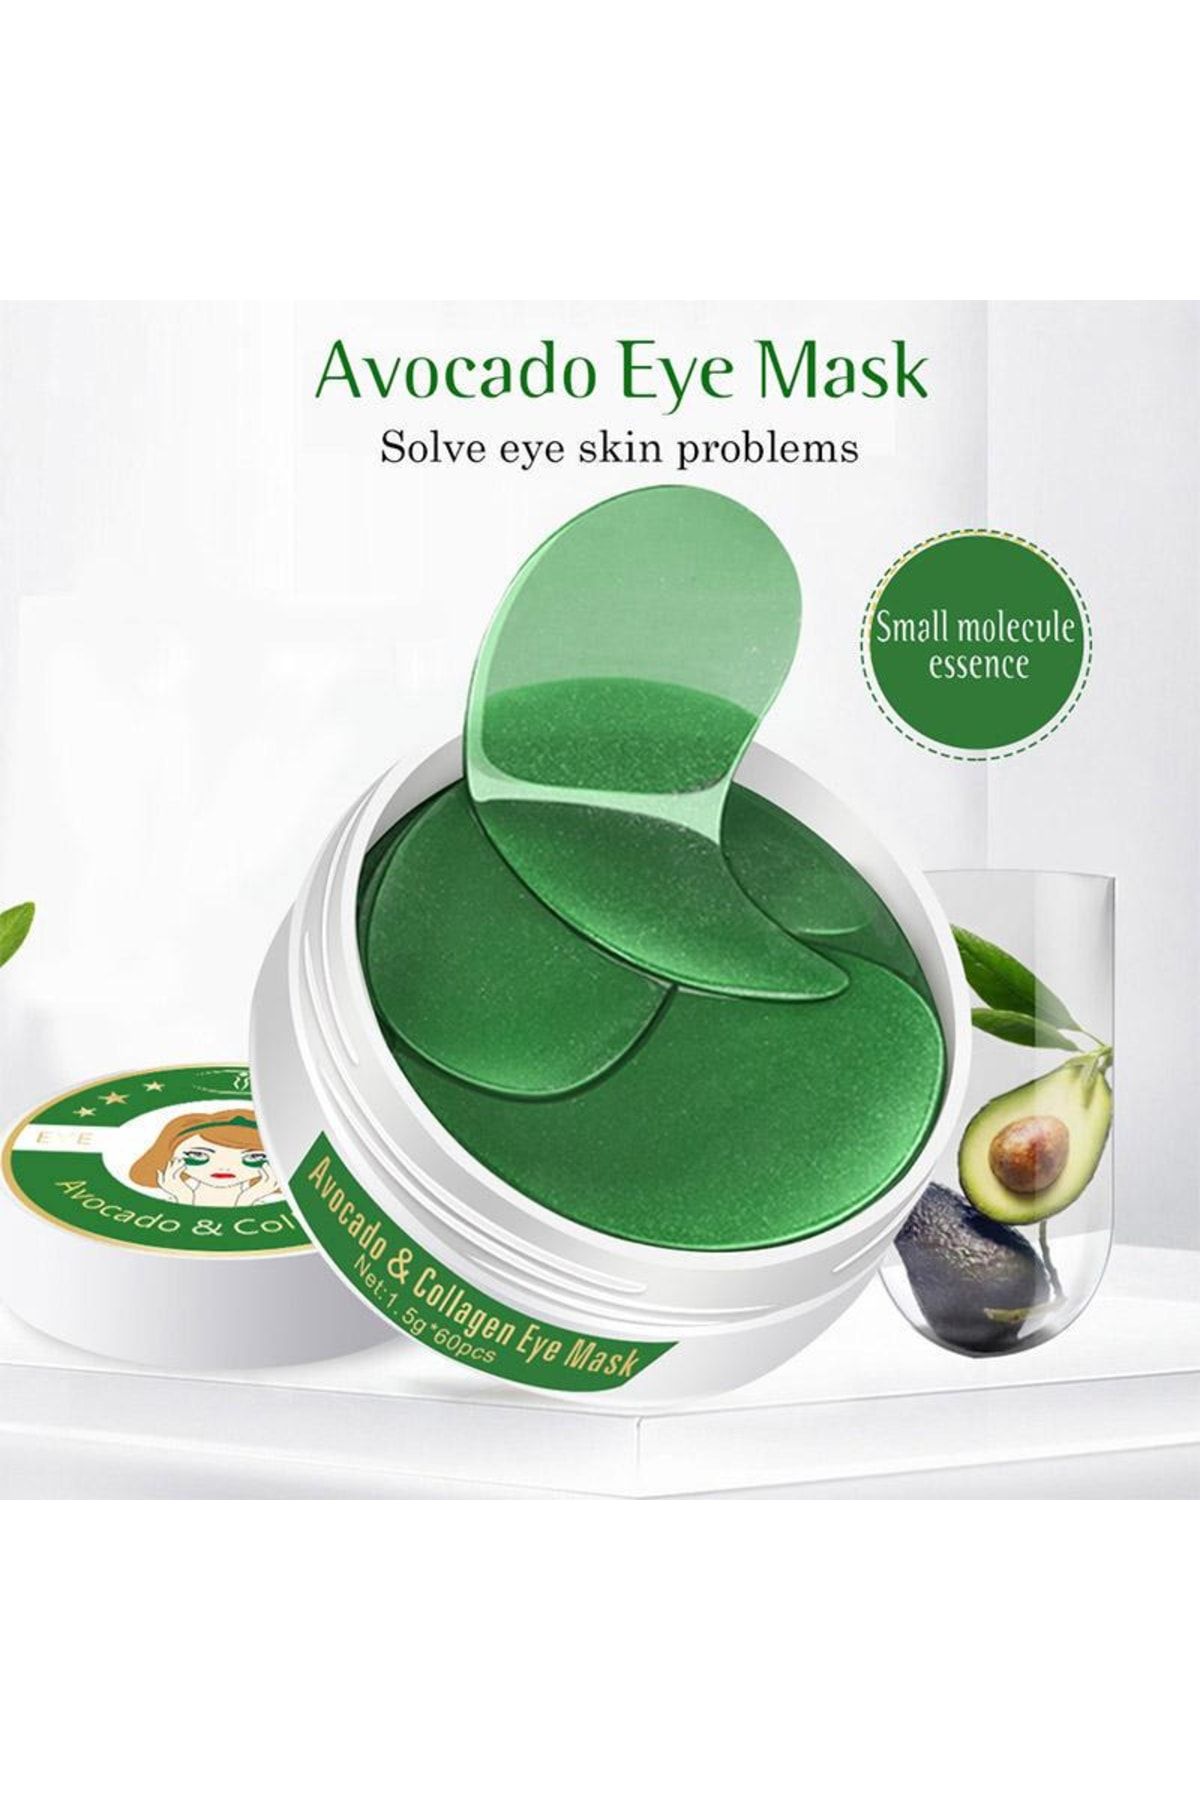 LİZAGOLD Kolajen Ve Avacado Içeren Sıkılaştırıcı Göz Maskesi 1.4g Mısa 24k 60 Adet